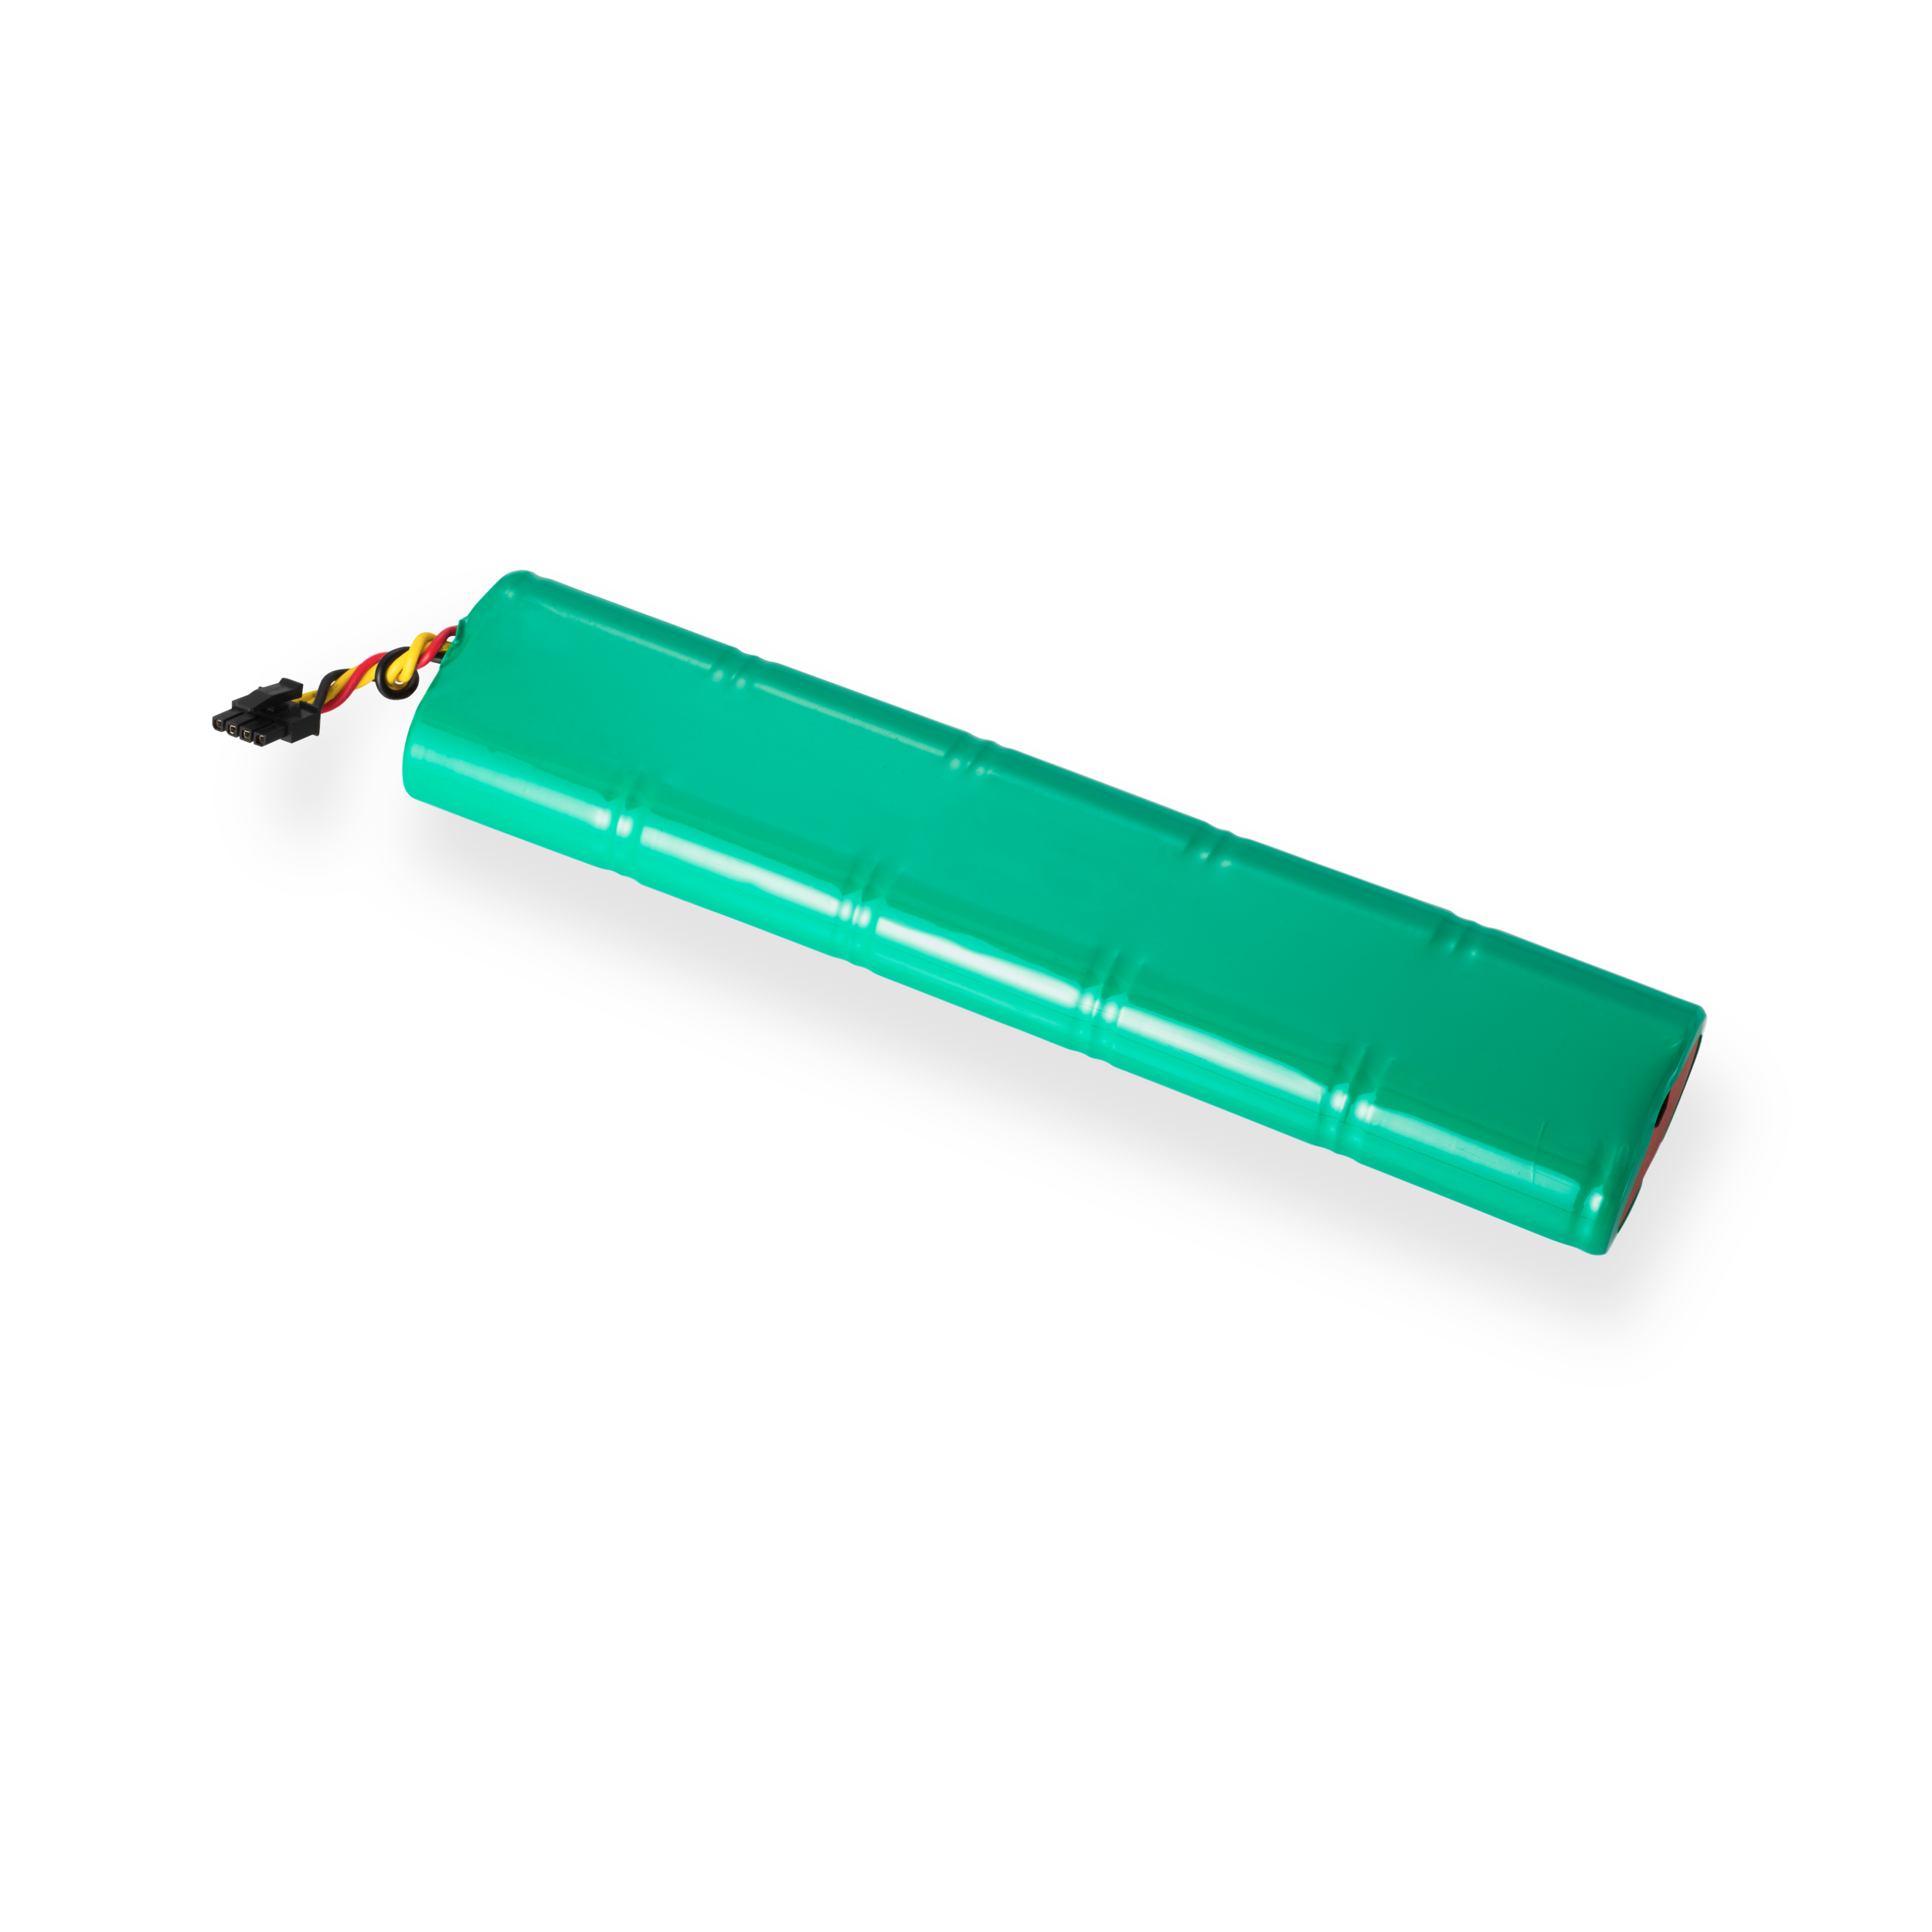 Neato Botvac batteri